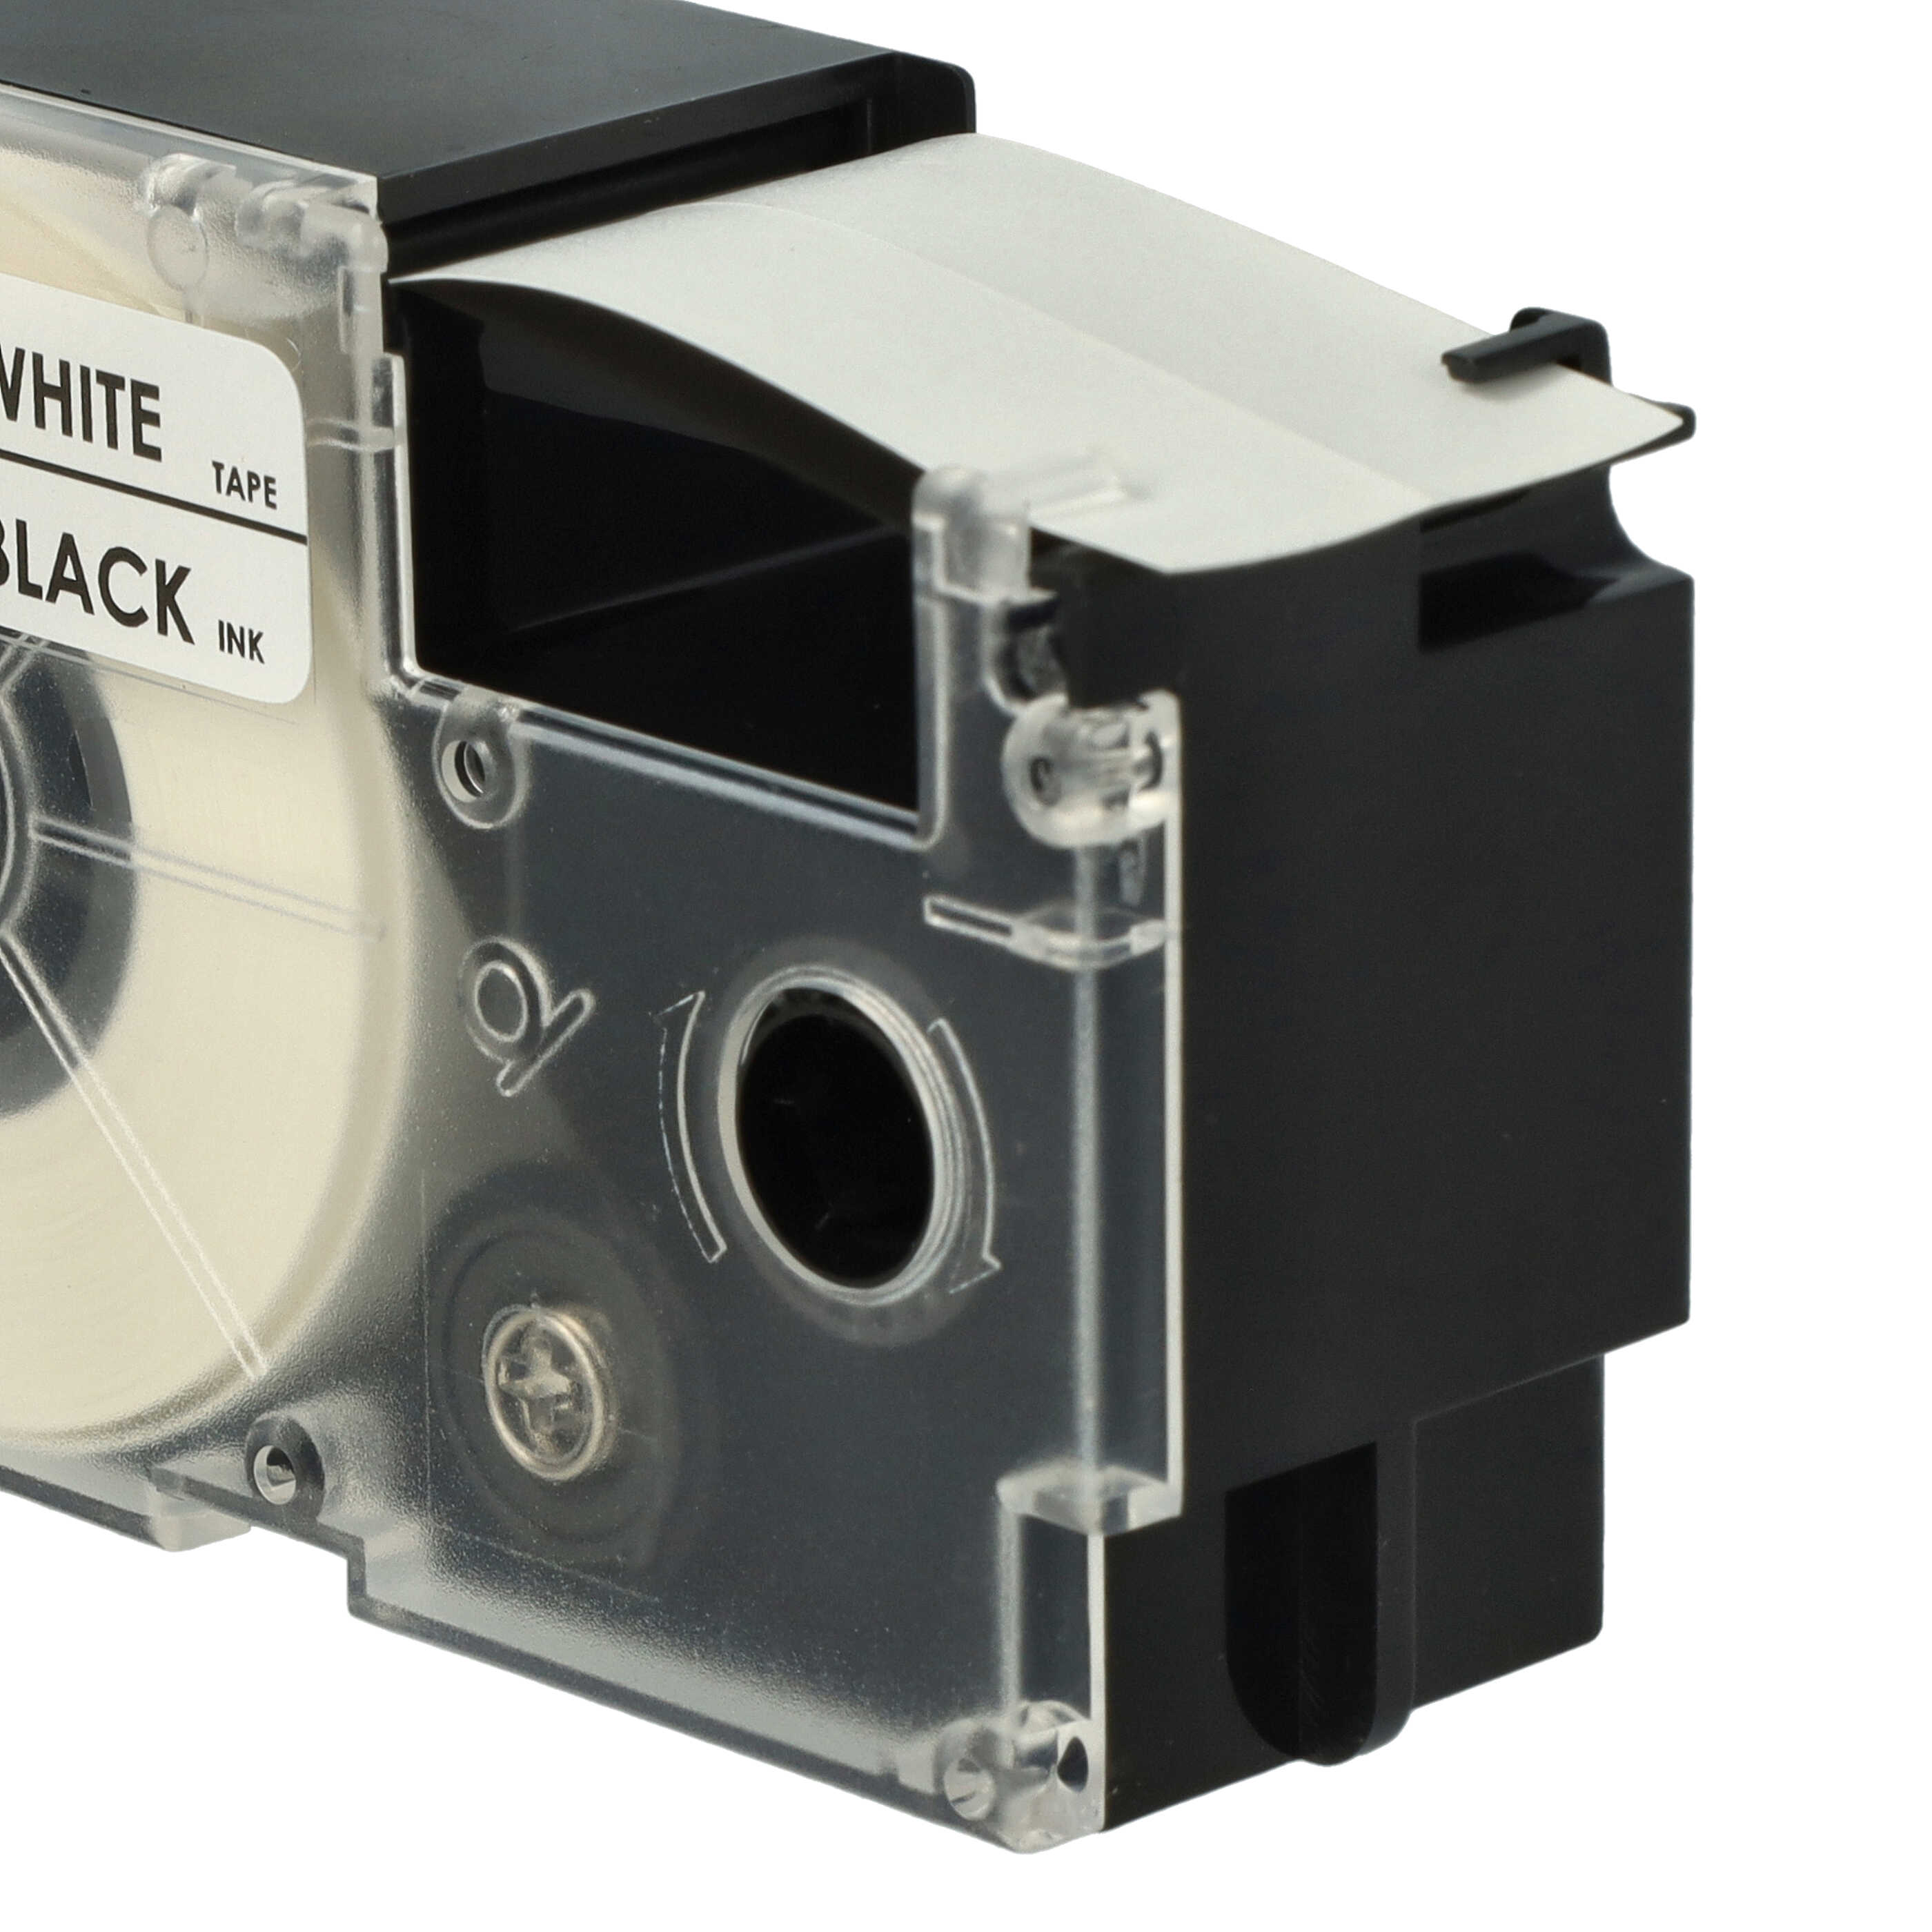 Cassette à ruban remplace Casio XR-24WE1, XR-24WE - 24mm lettrage Noir ruban Blanc